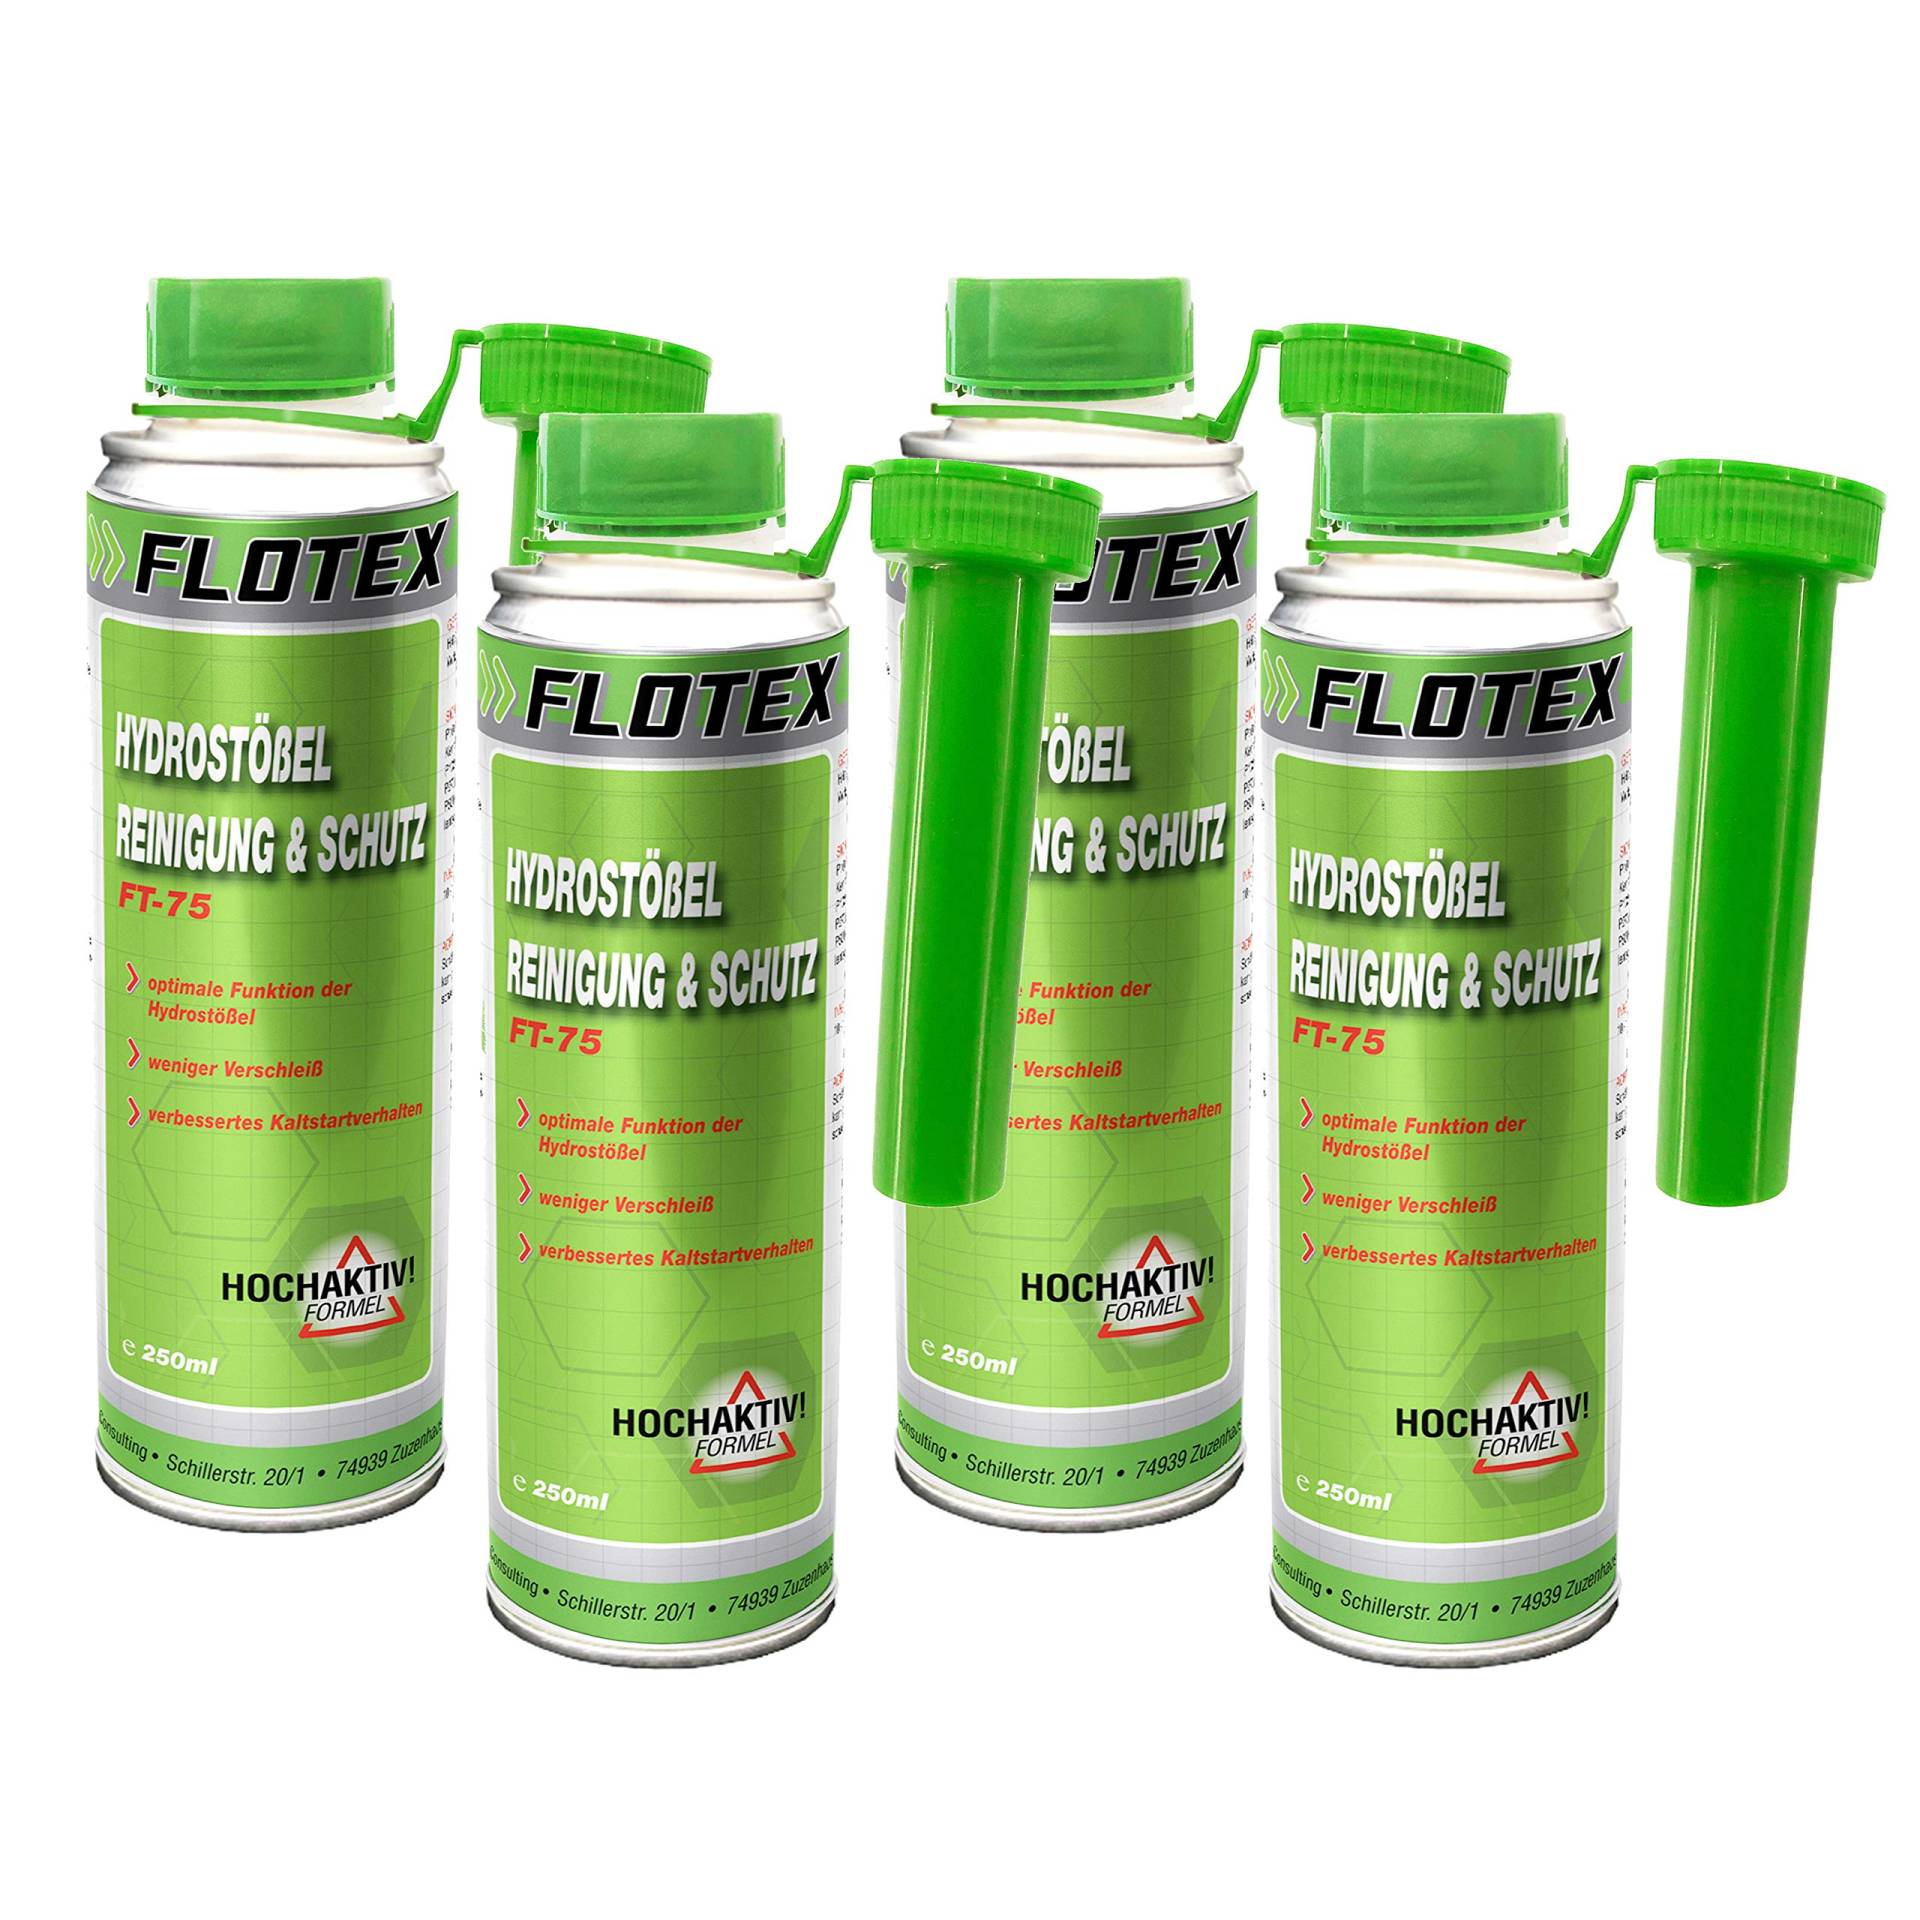 Flotex Hydrostößel Reinigung & Schutz, 4 x 250ml Additiv reinigt Ventilstößel von Flotex